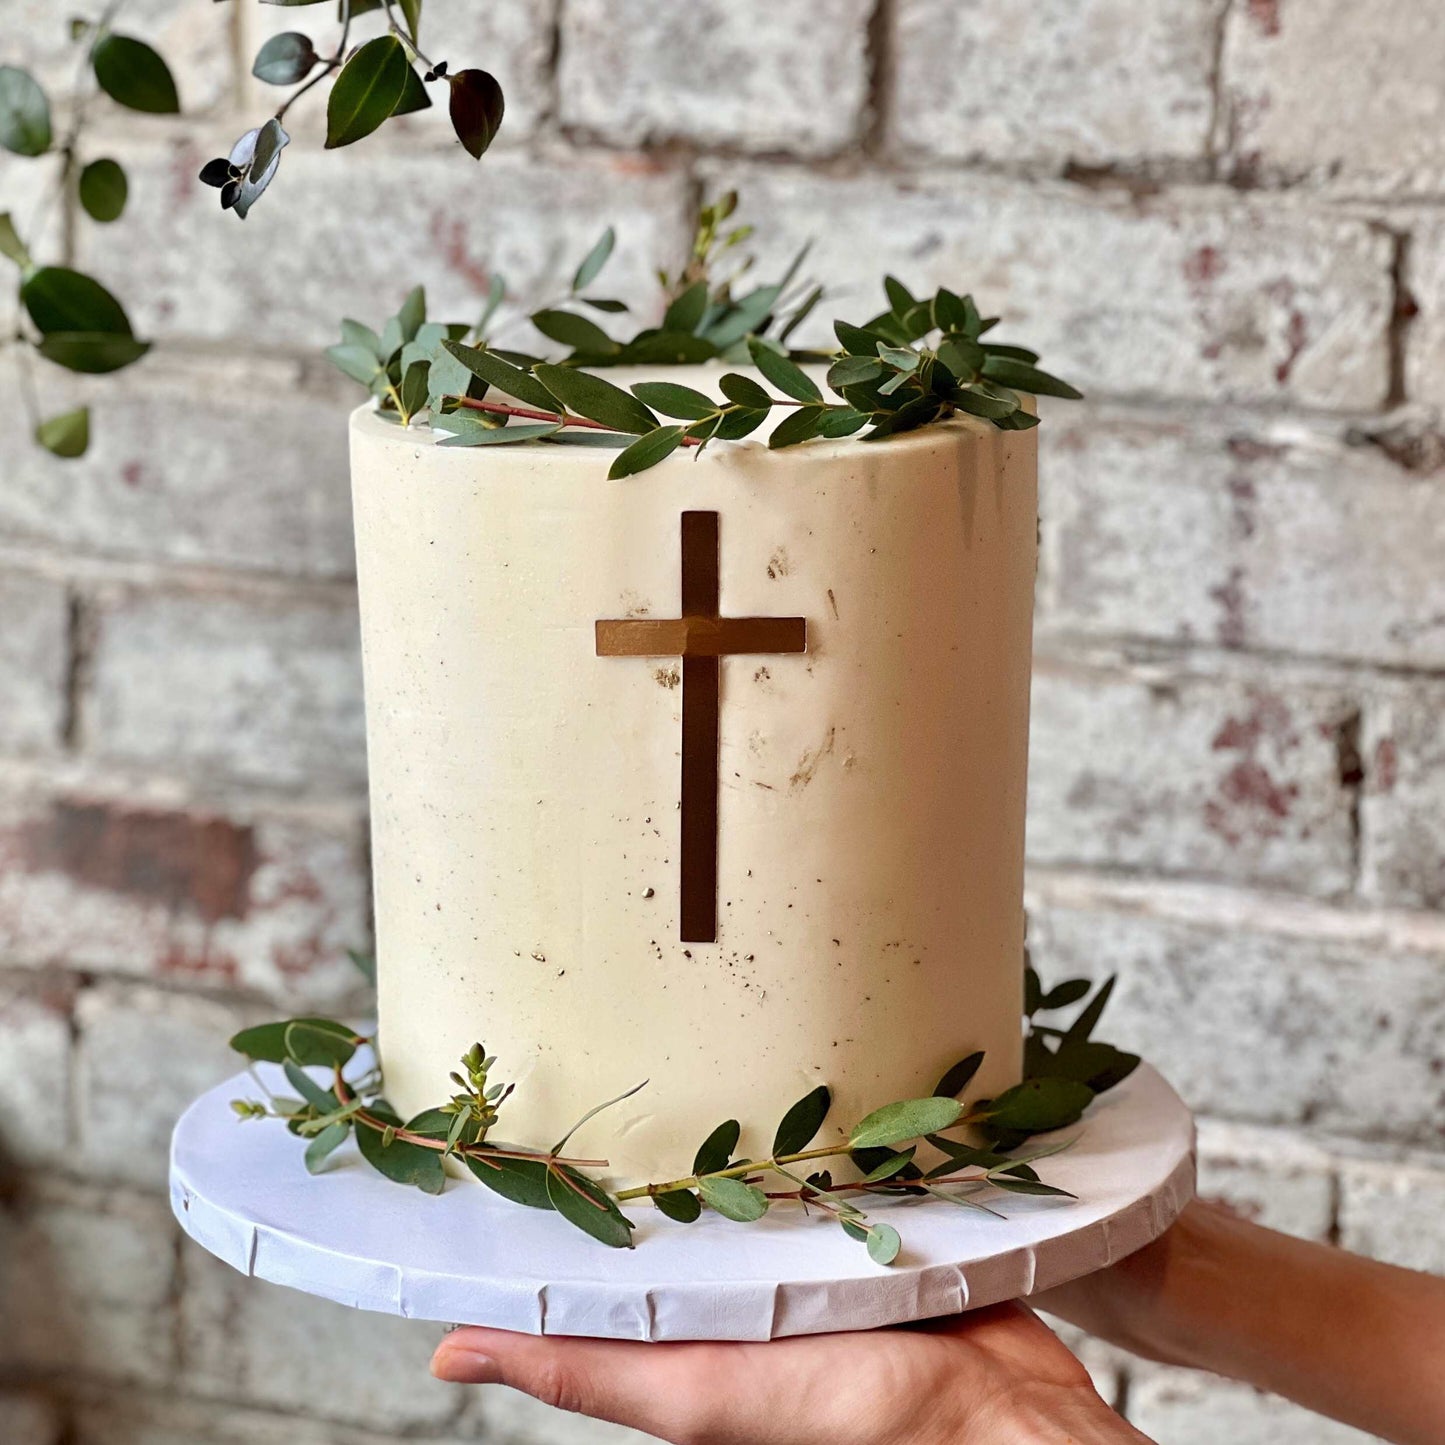 Blessing Cross Cake